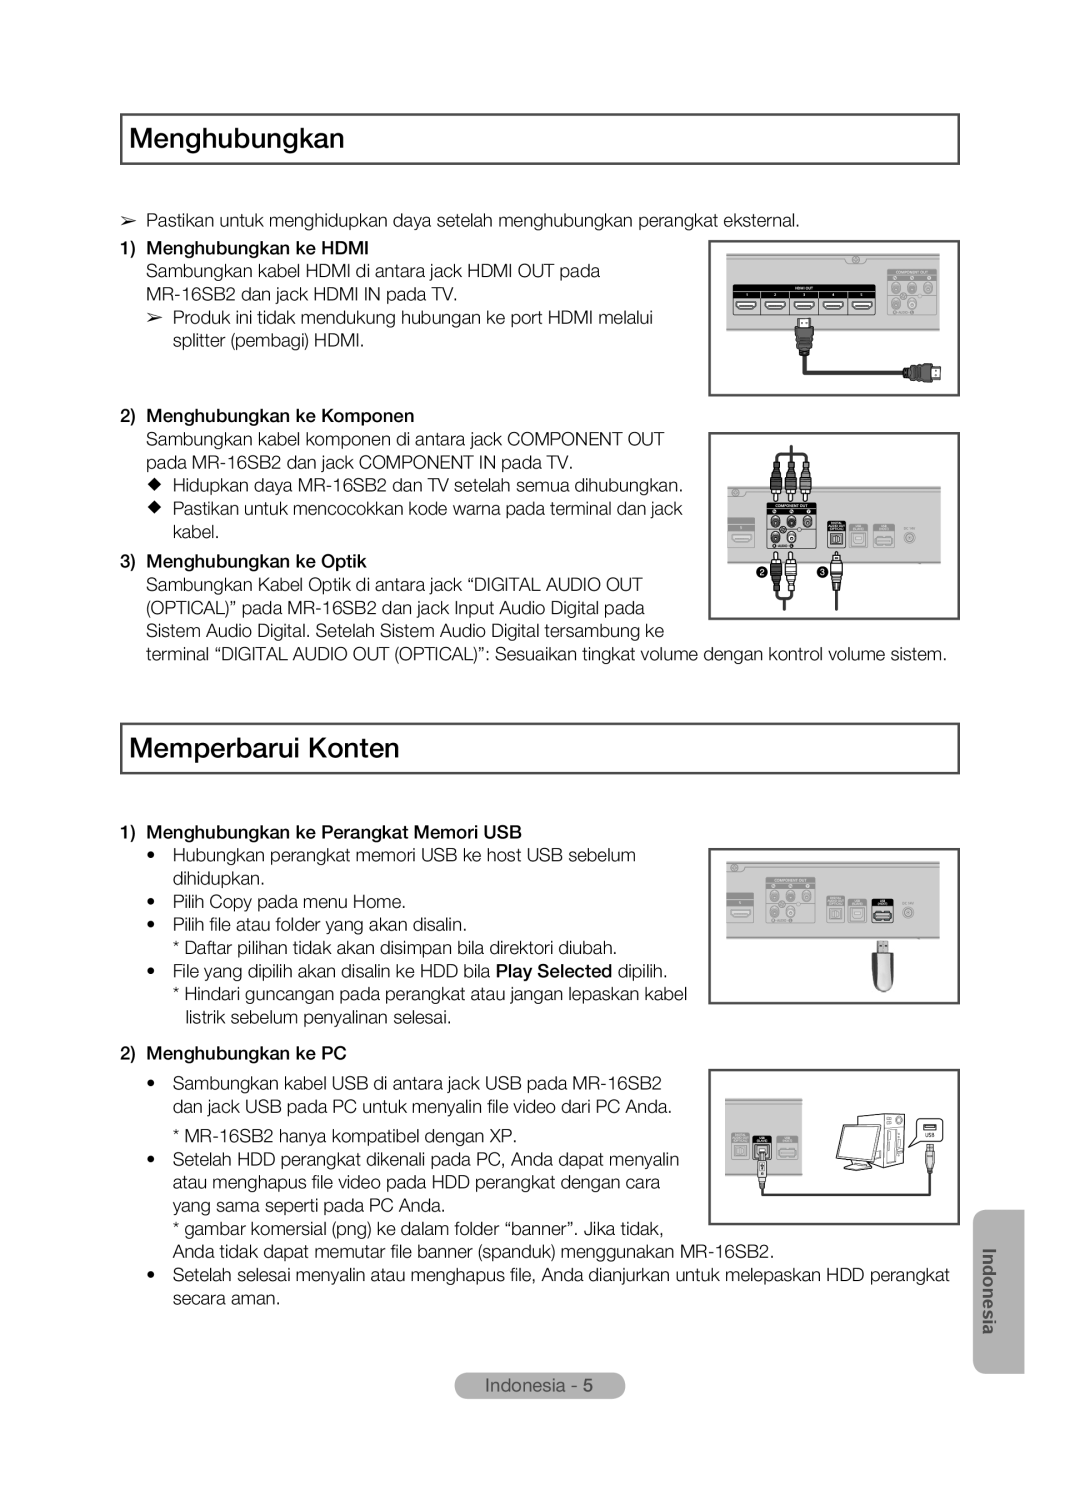 Samsung MR-16SB2 manual Menghubungkan, Memperbarui Konten, Indonesia 